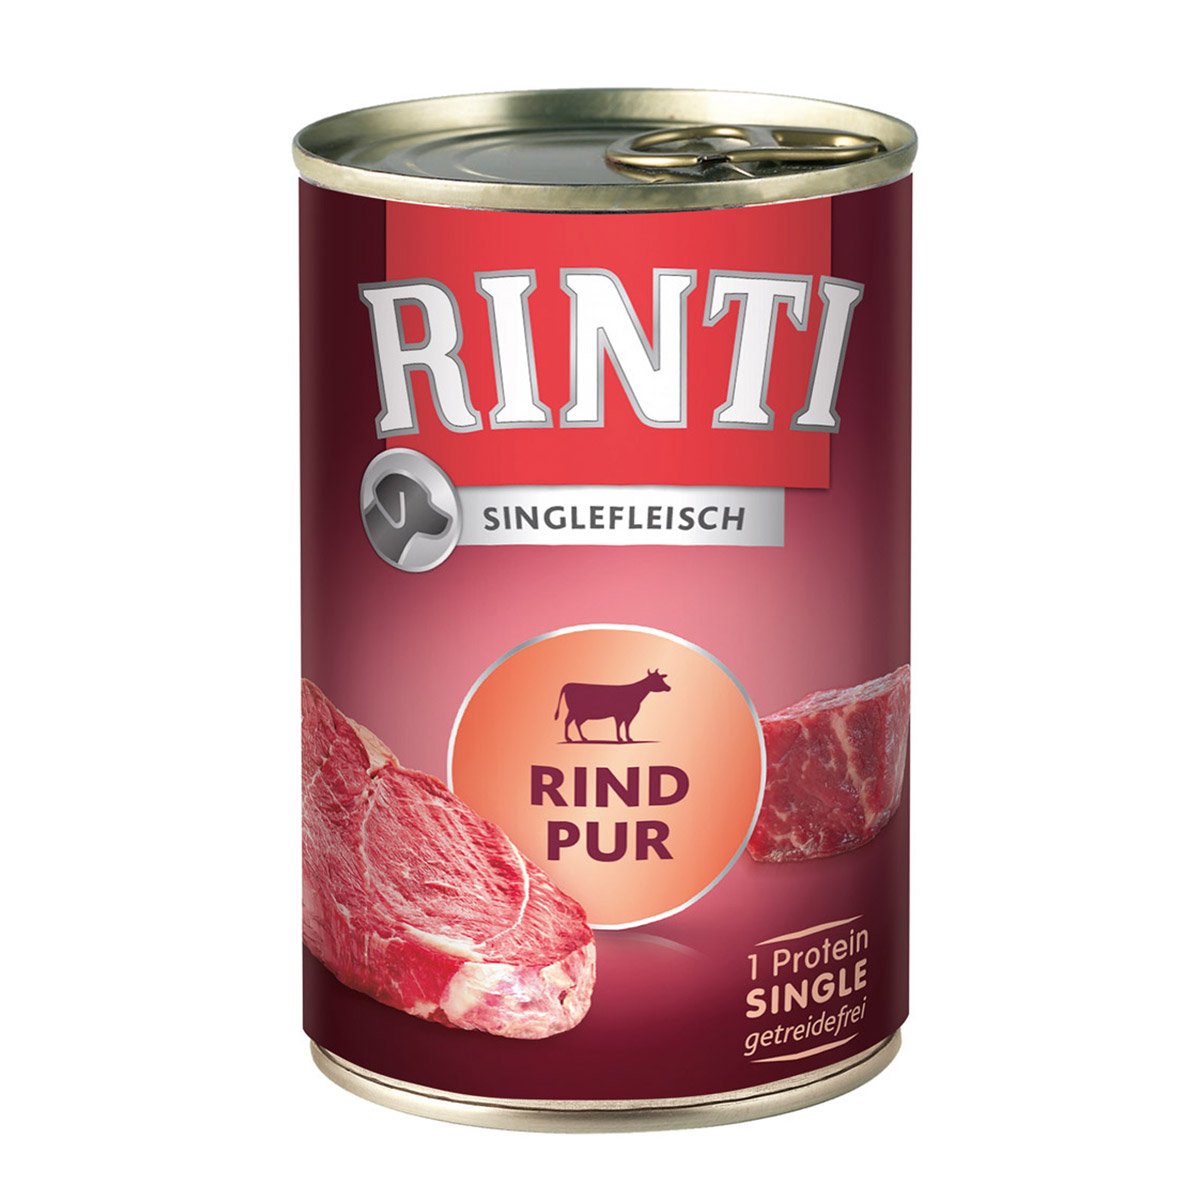 Rinti Singlefleisch Rind pur 12x400g